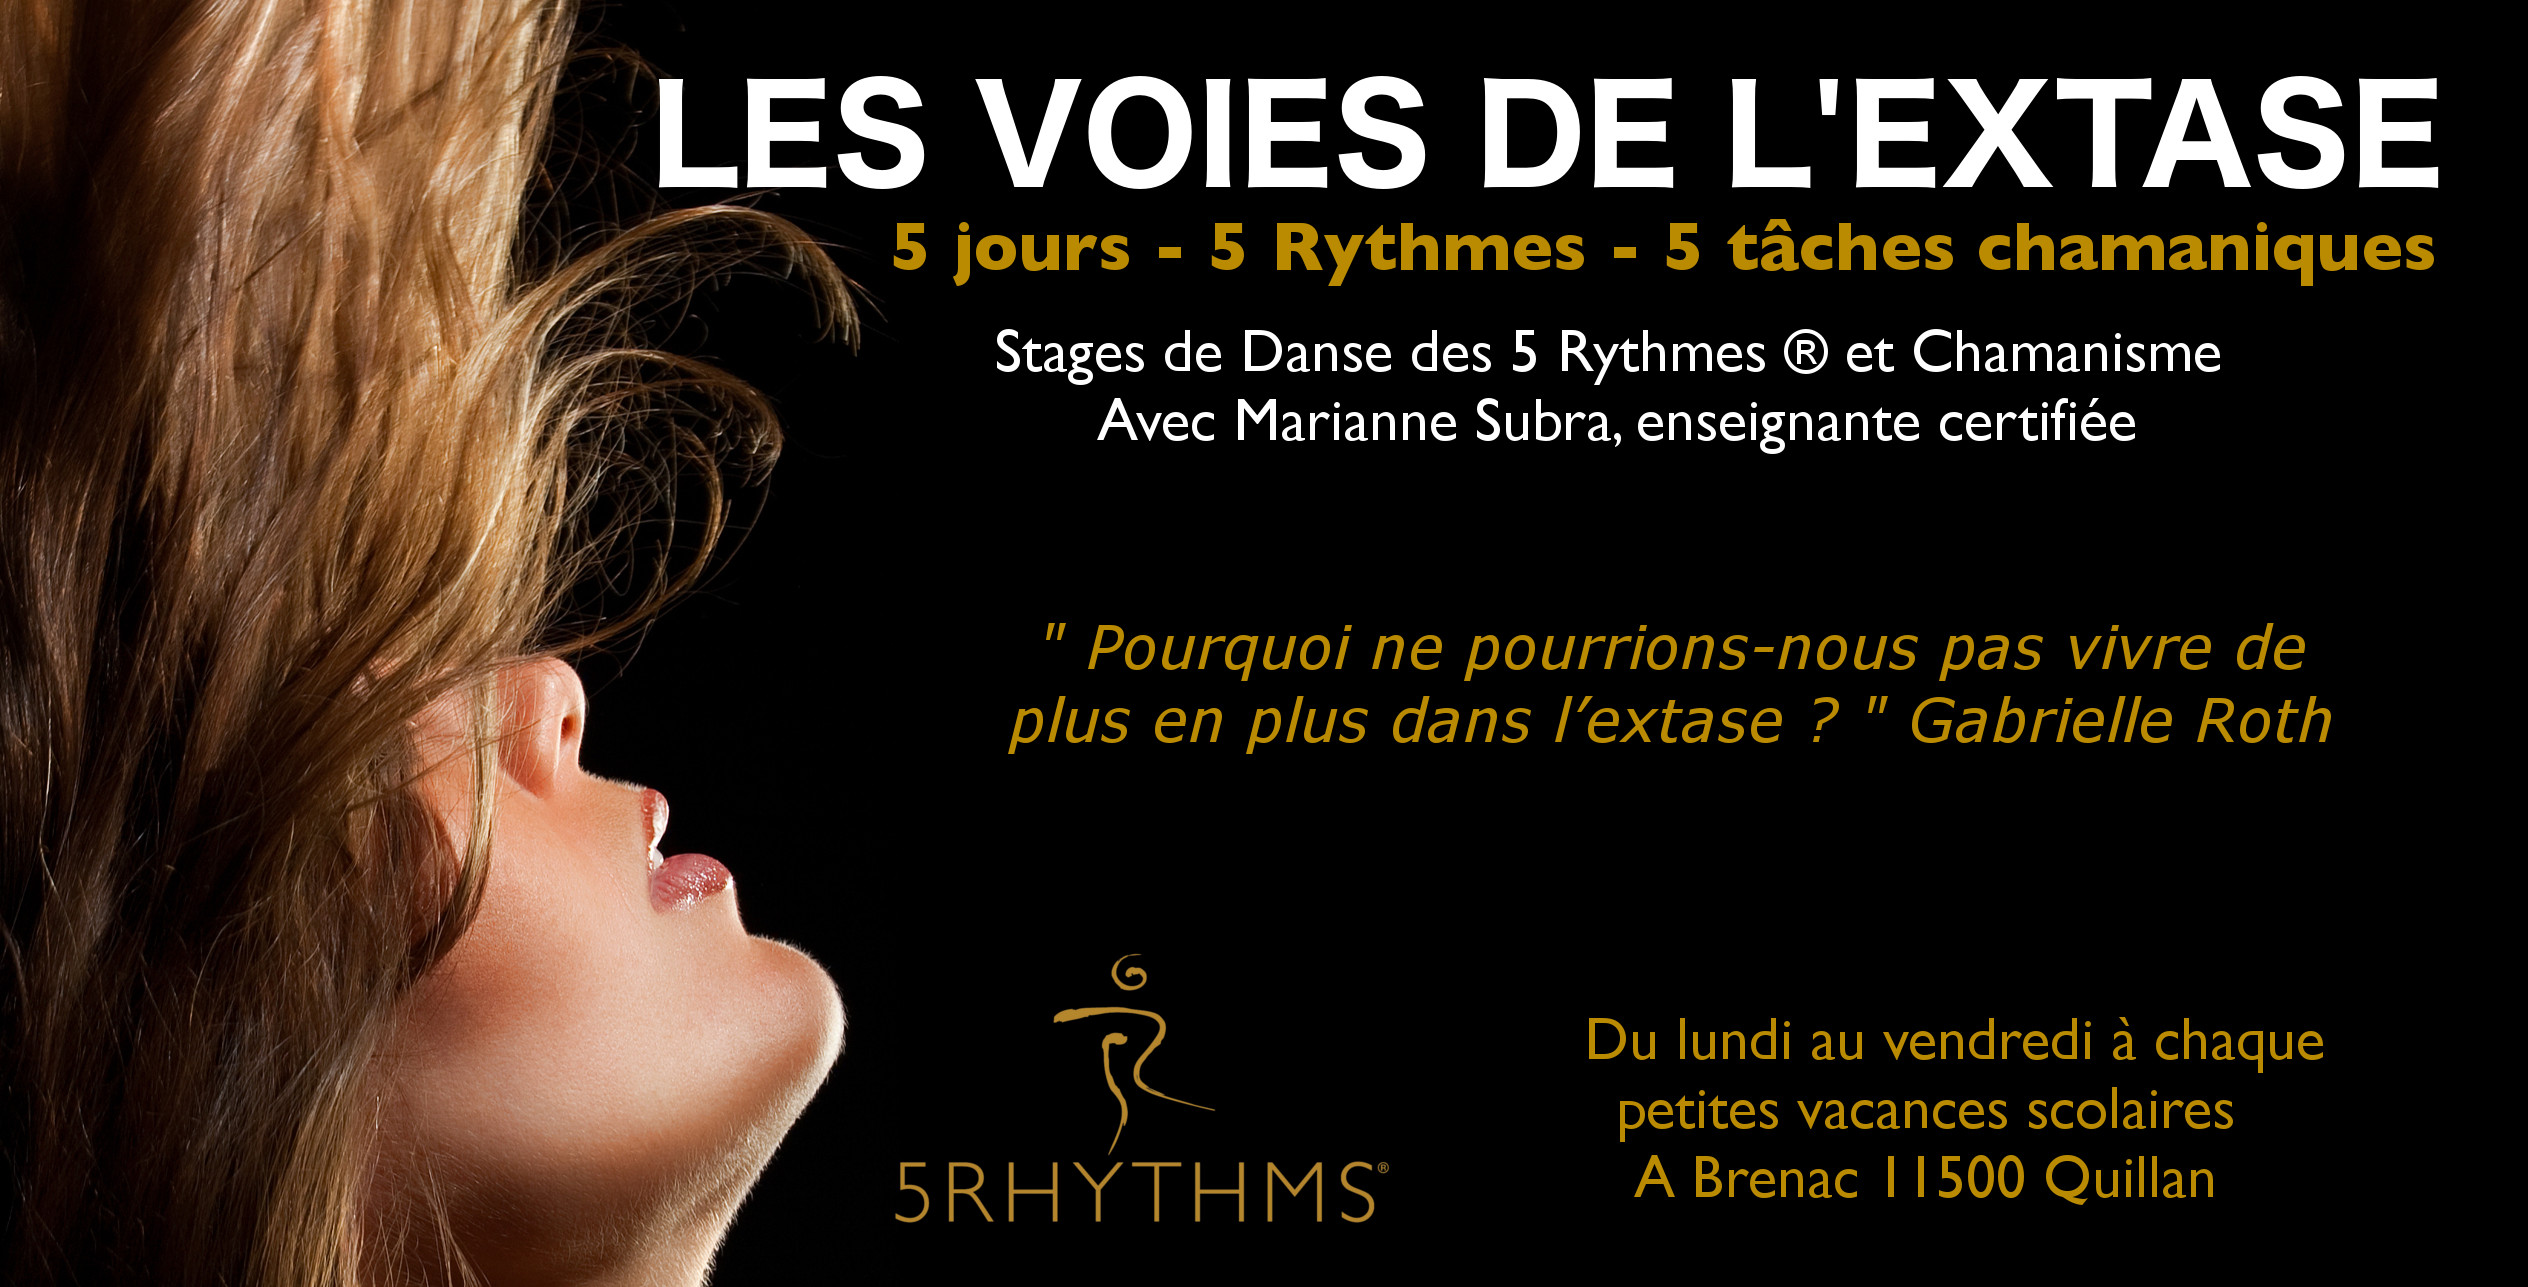 Les voies de l'extase, stages de Danse des 5 rythmes avec Marianne Subrandans la Haute Vallée de l'Aude